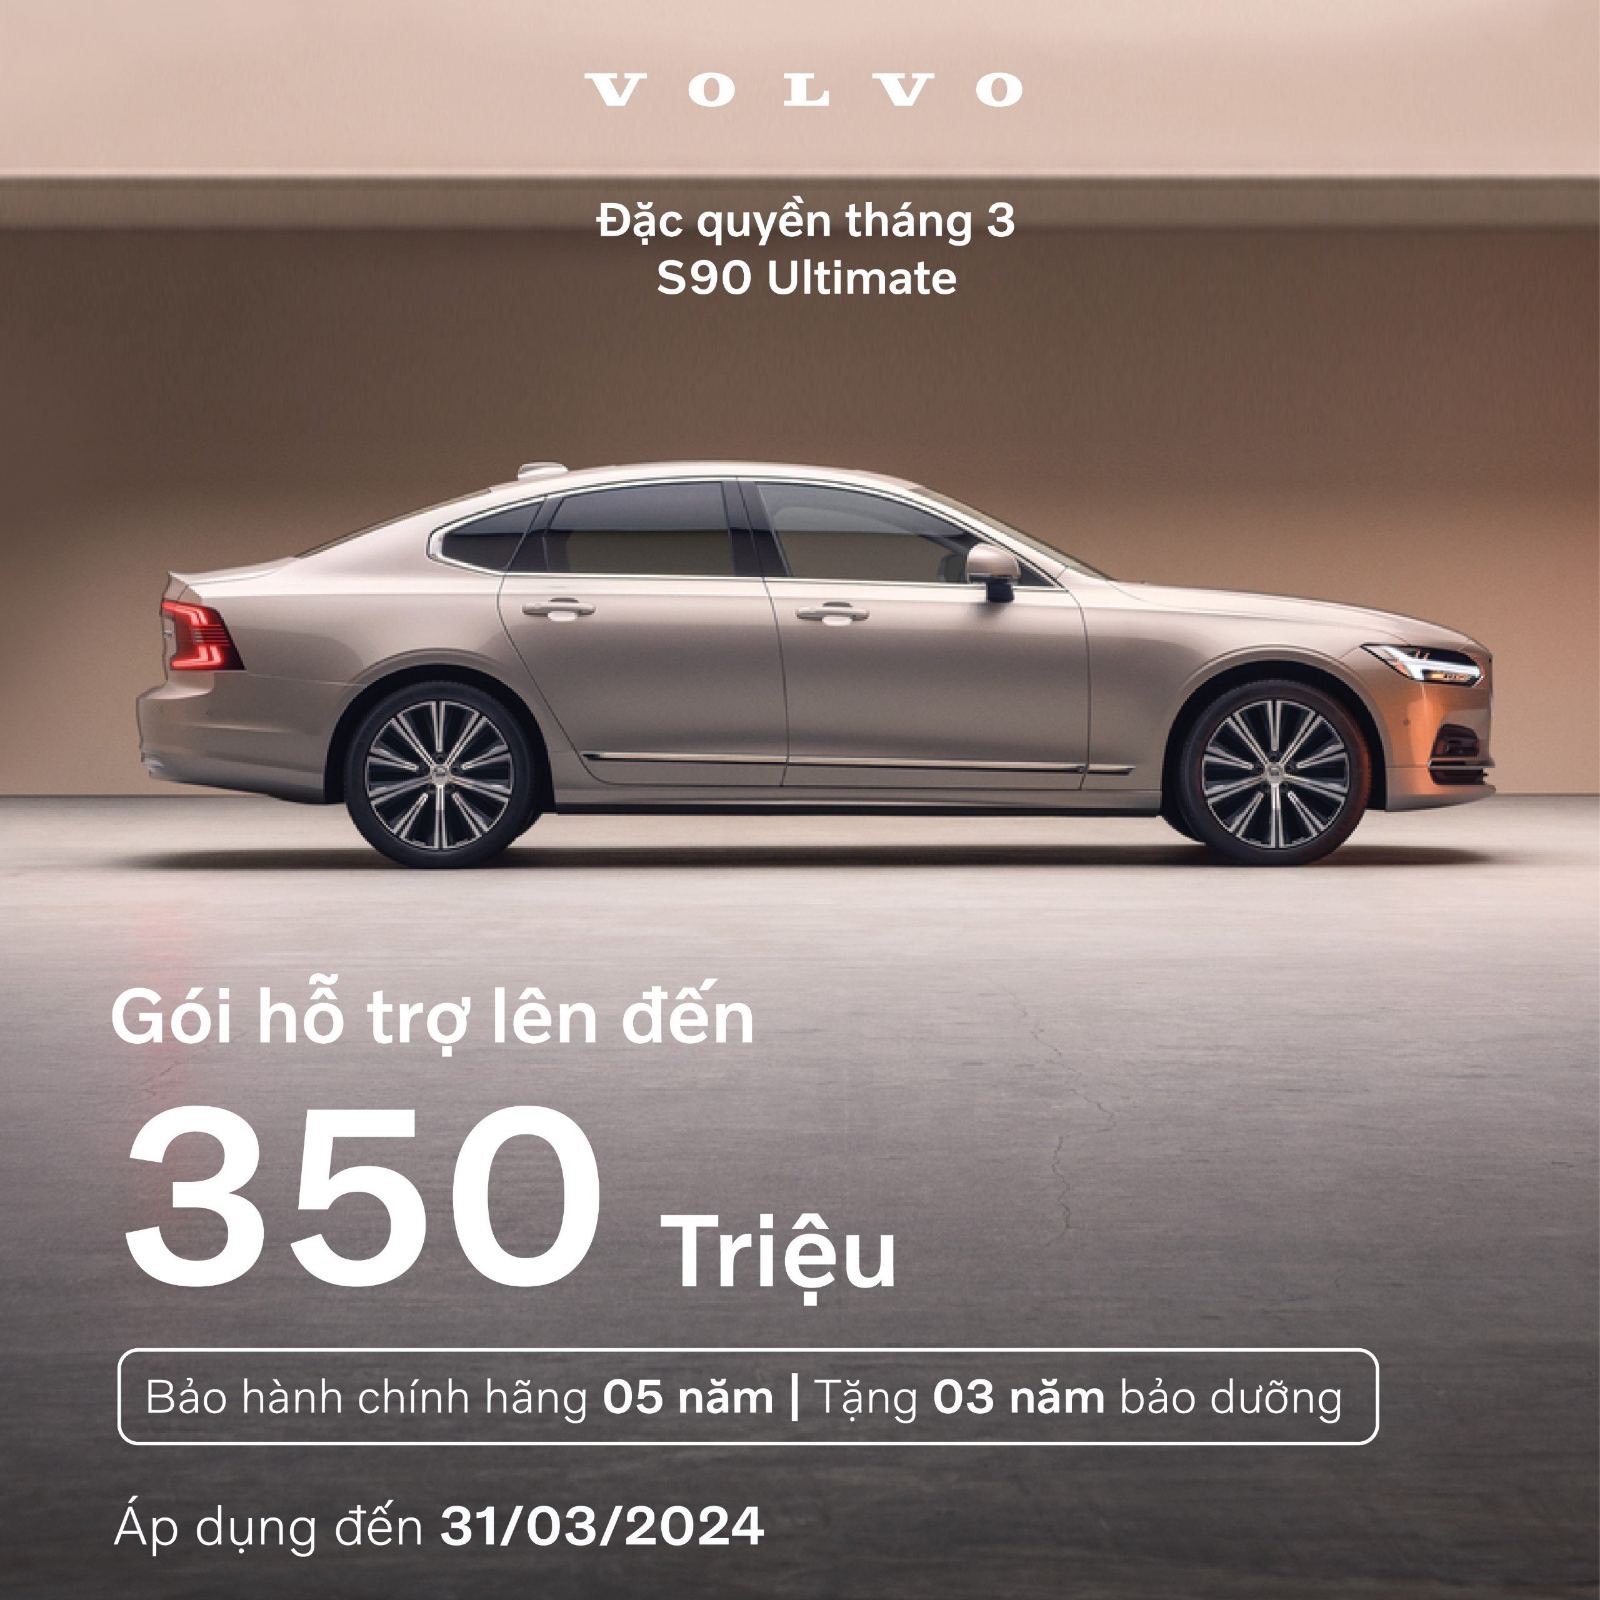 Cùng tìm hiểu về vẻ ngoài lộng lẫy của Volvo S90 